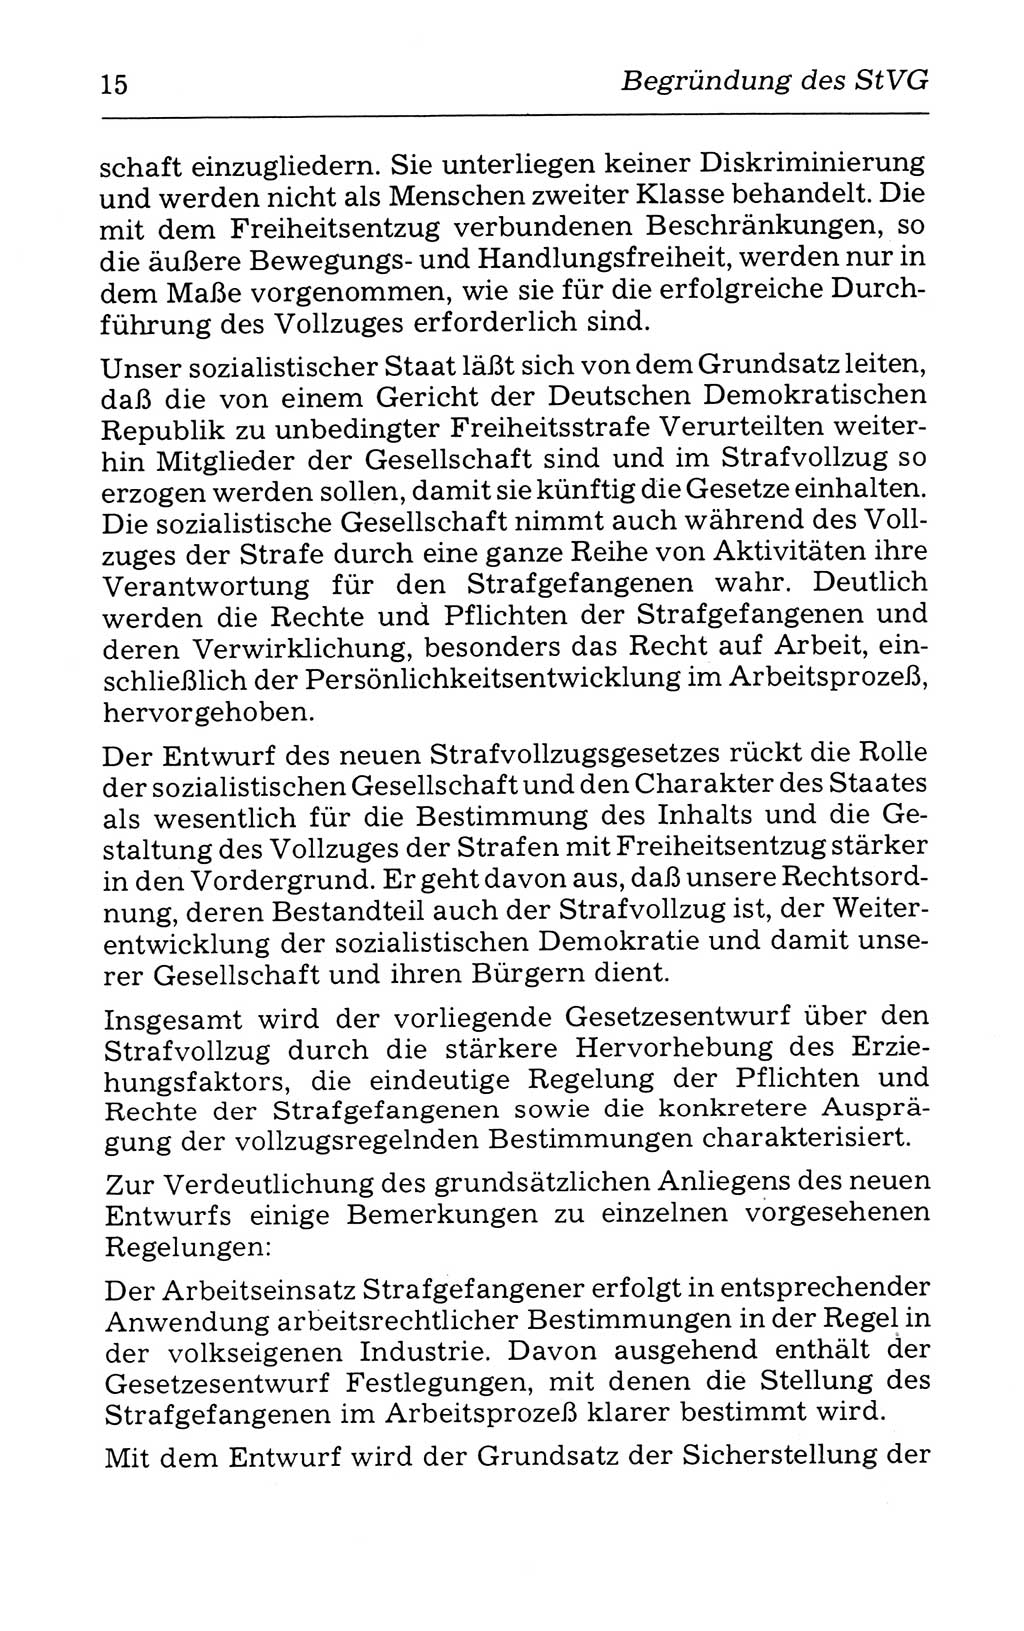 Kommentar zum Strafvollzugsgesetz [(StVG) Deutsche Demokratische Republik (DDR)] 1980, Seite 15 (Komm. StVG DDR 1980, S. 15)